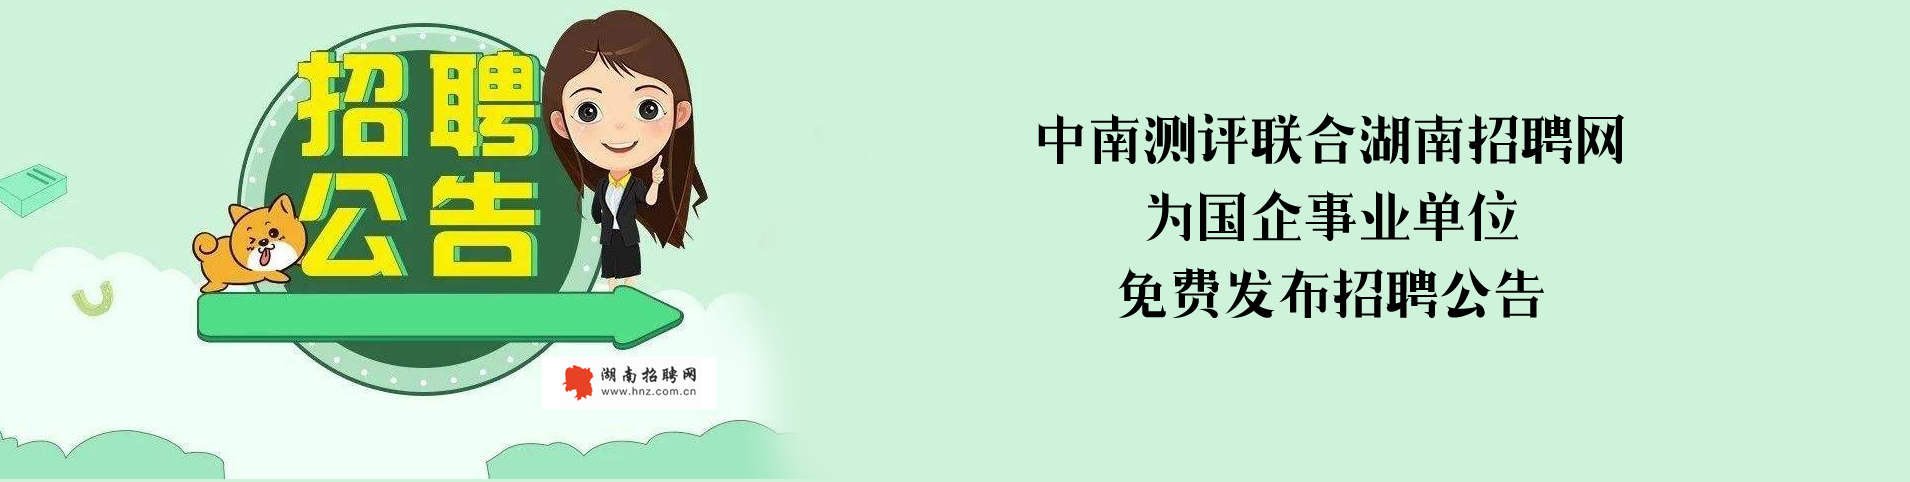 中南测评联合湖南招聘网为事业单位发布招聘公告